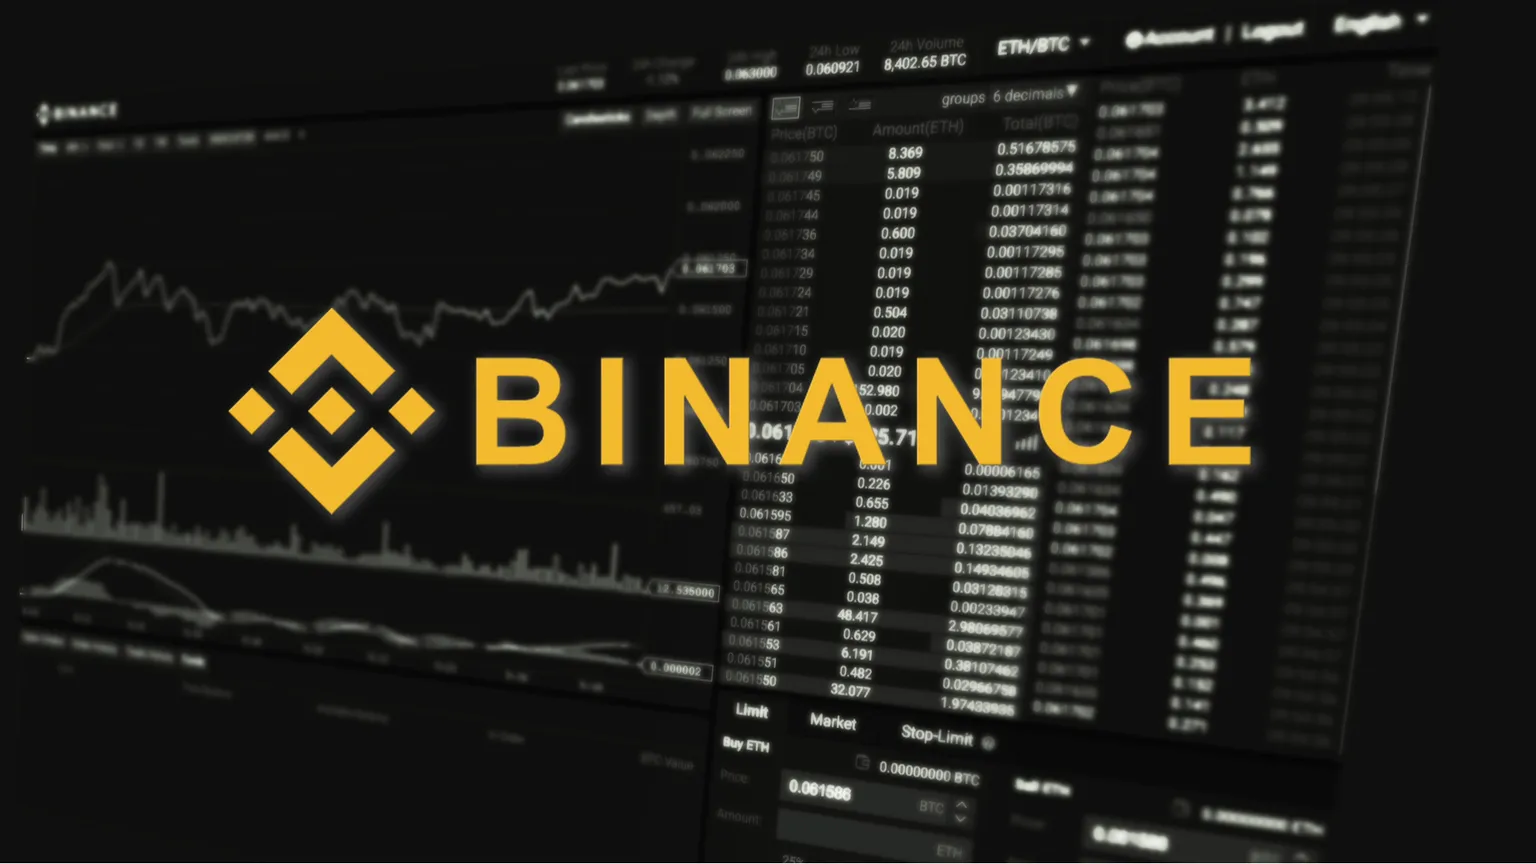 Logo de Binance en pantalla de trading